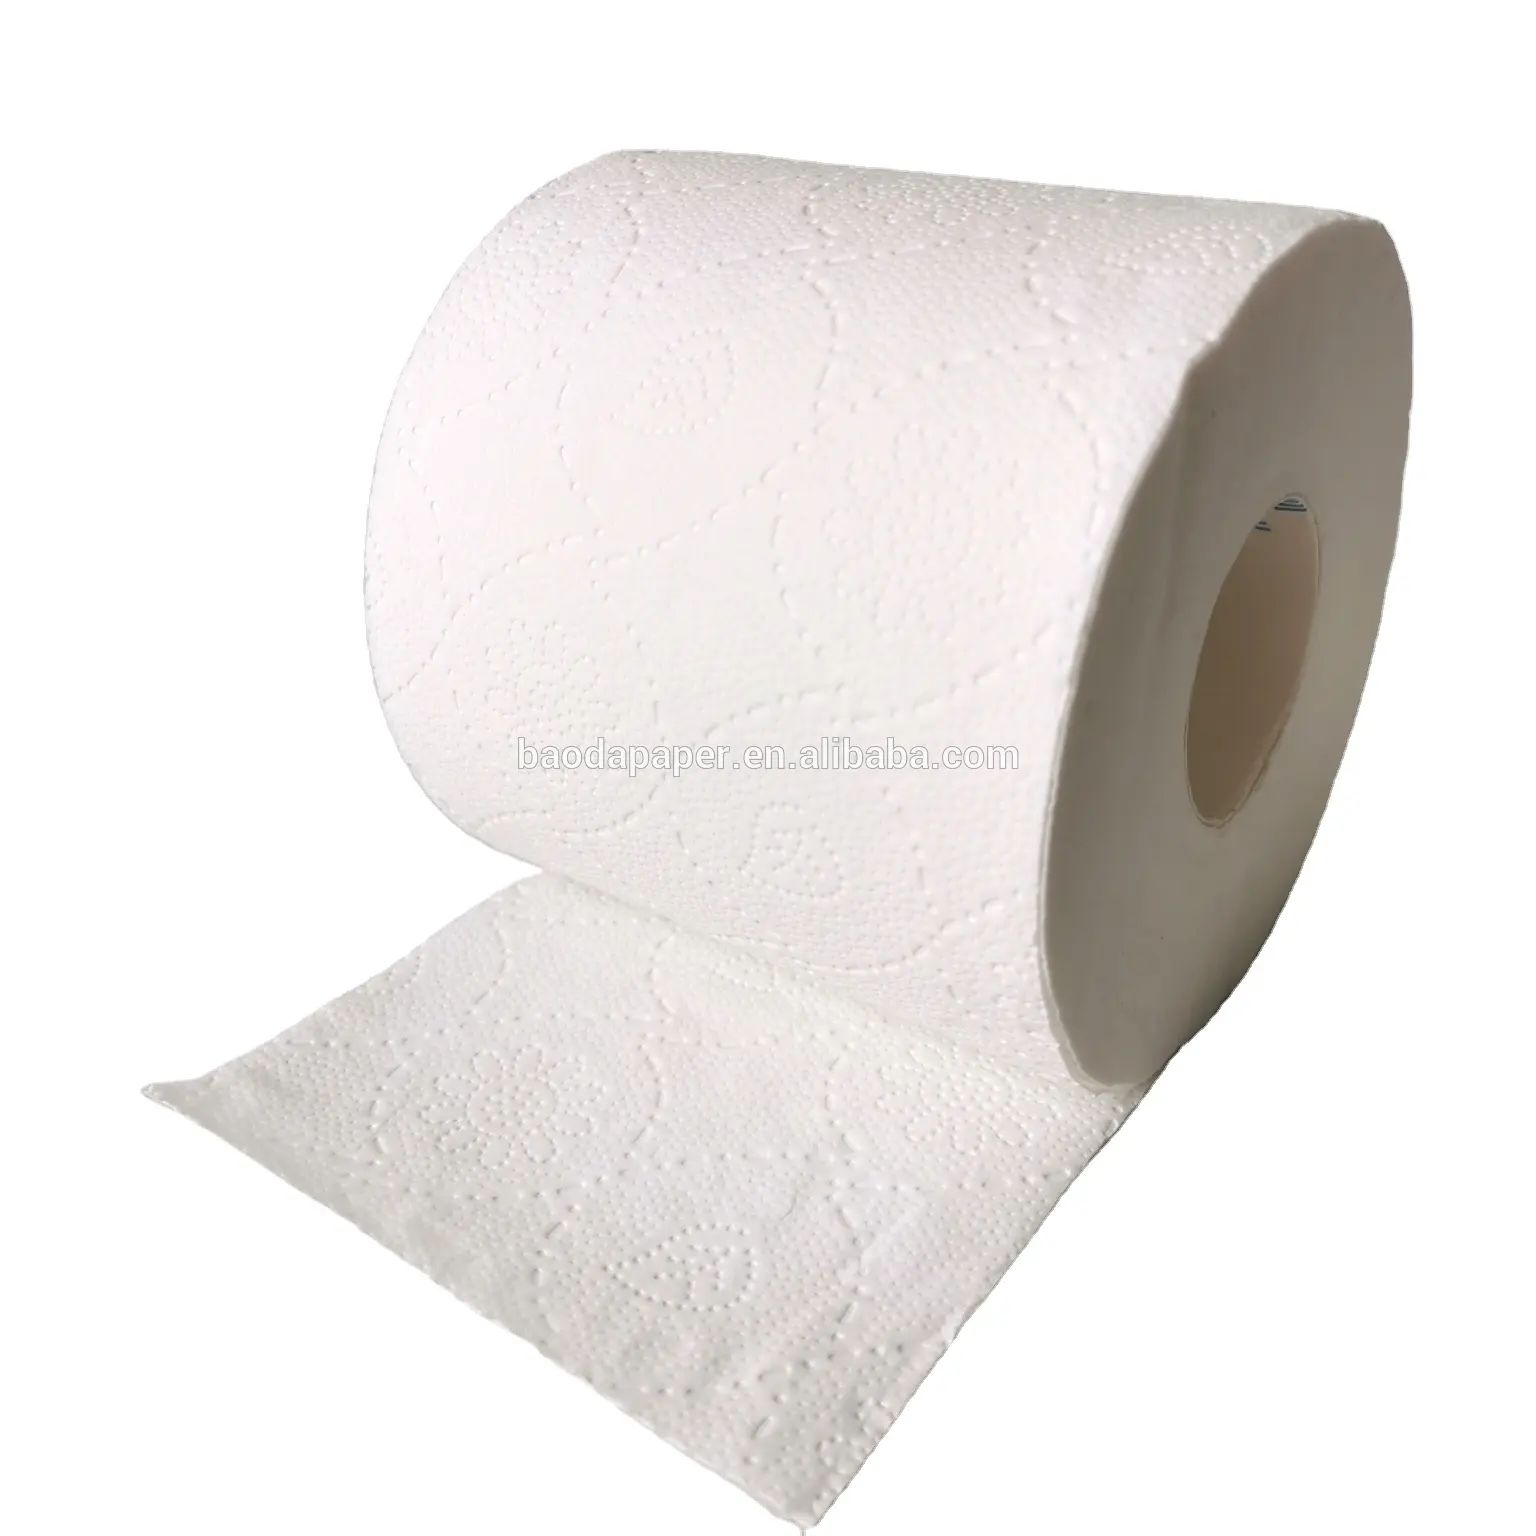 Производитель и поставщик в Китае, высокое качество, бесплатная доставка, тканевые 4-слойные рулоны туалетной бумаги